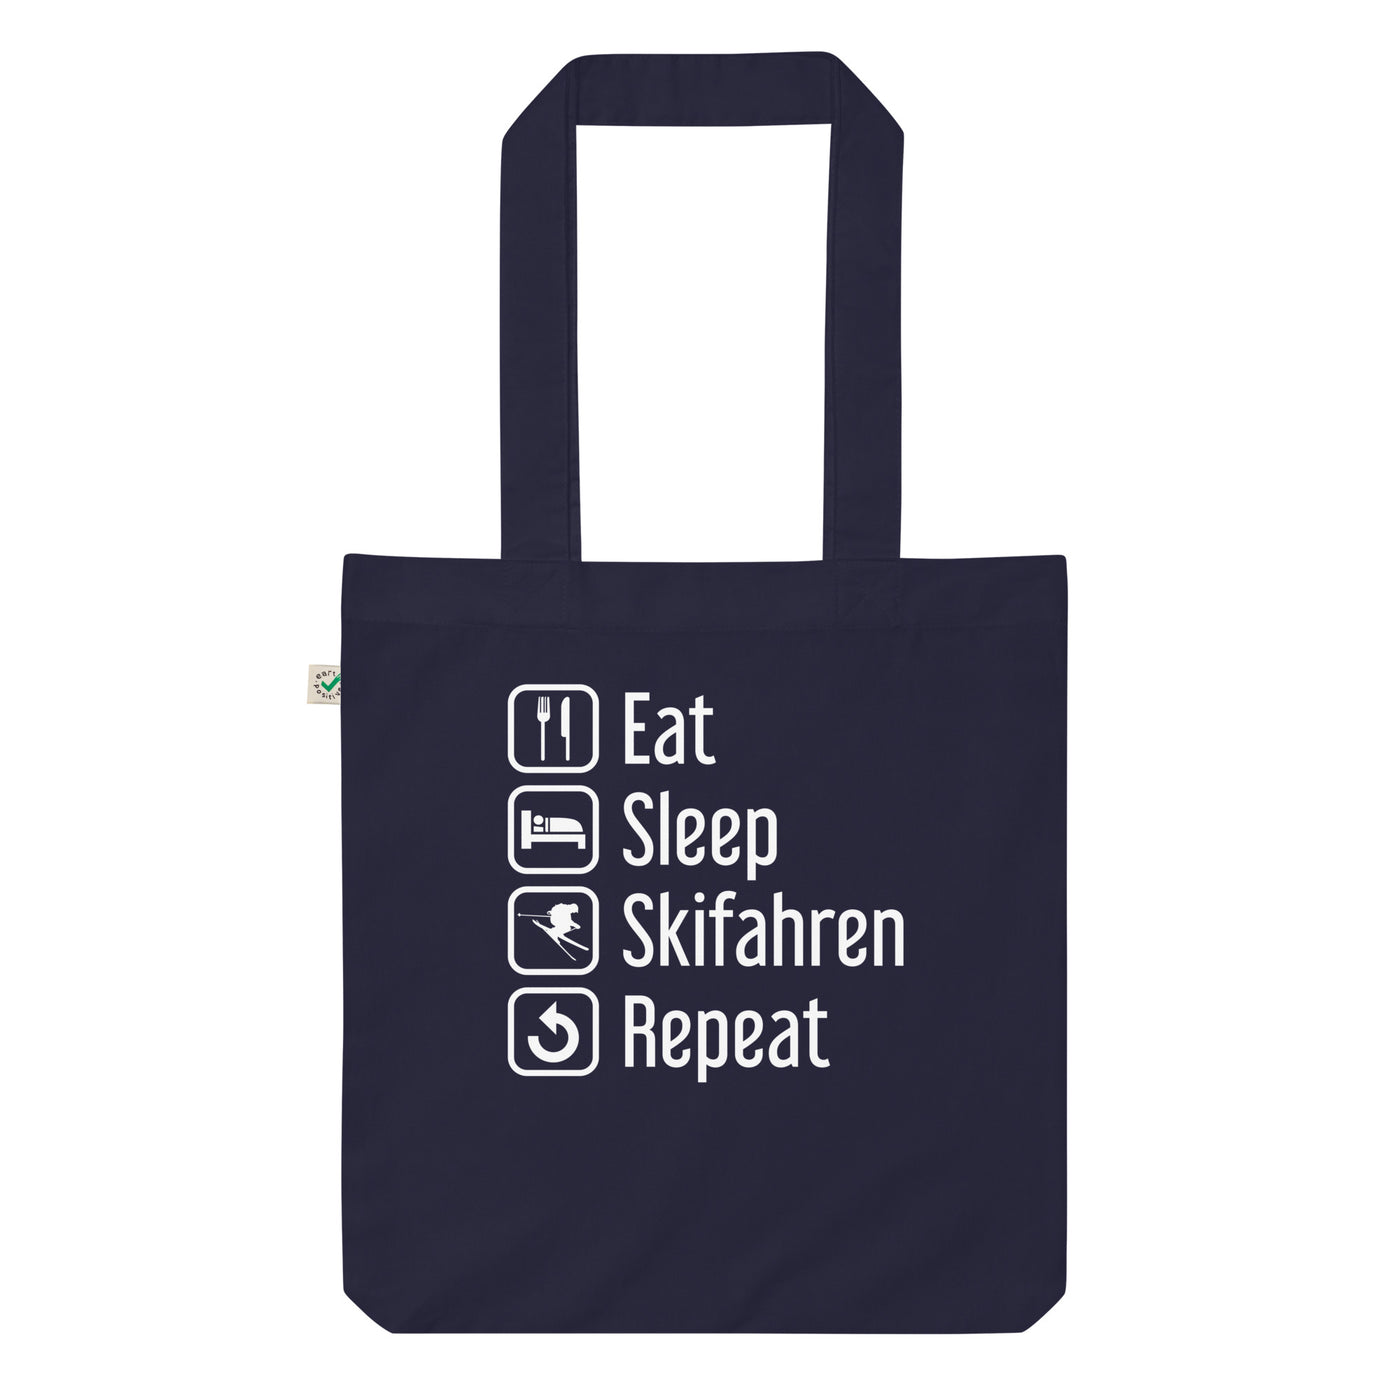 Eat Sleep Skifahren Repeat - Organic Einkaufstasche klettern ski Navy